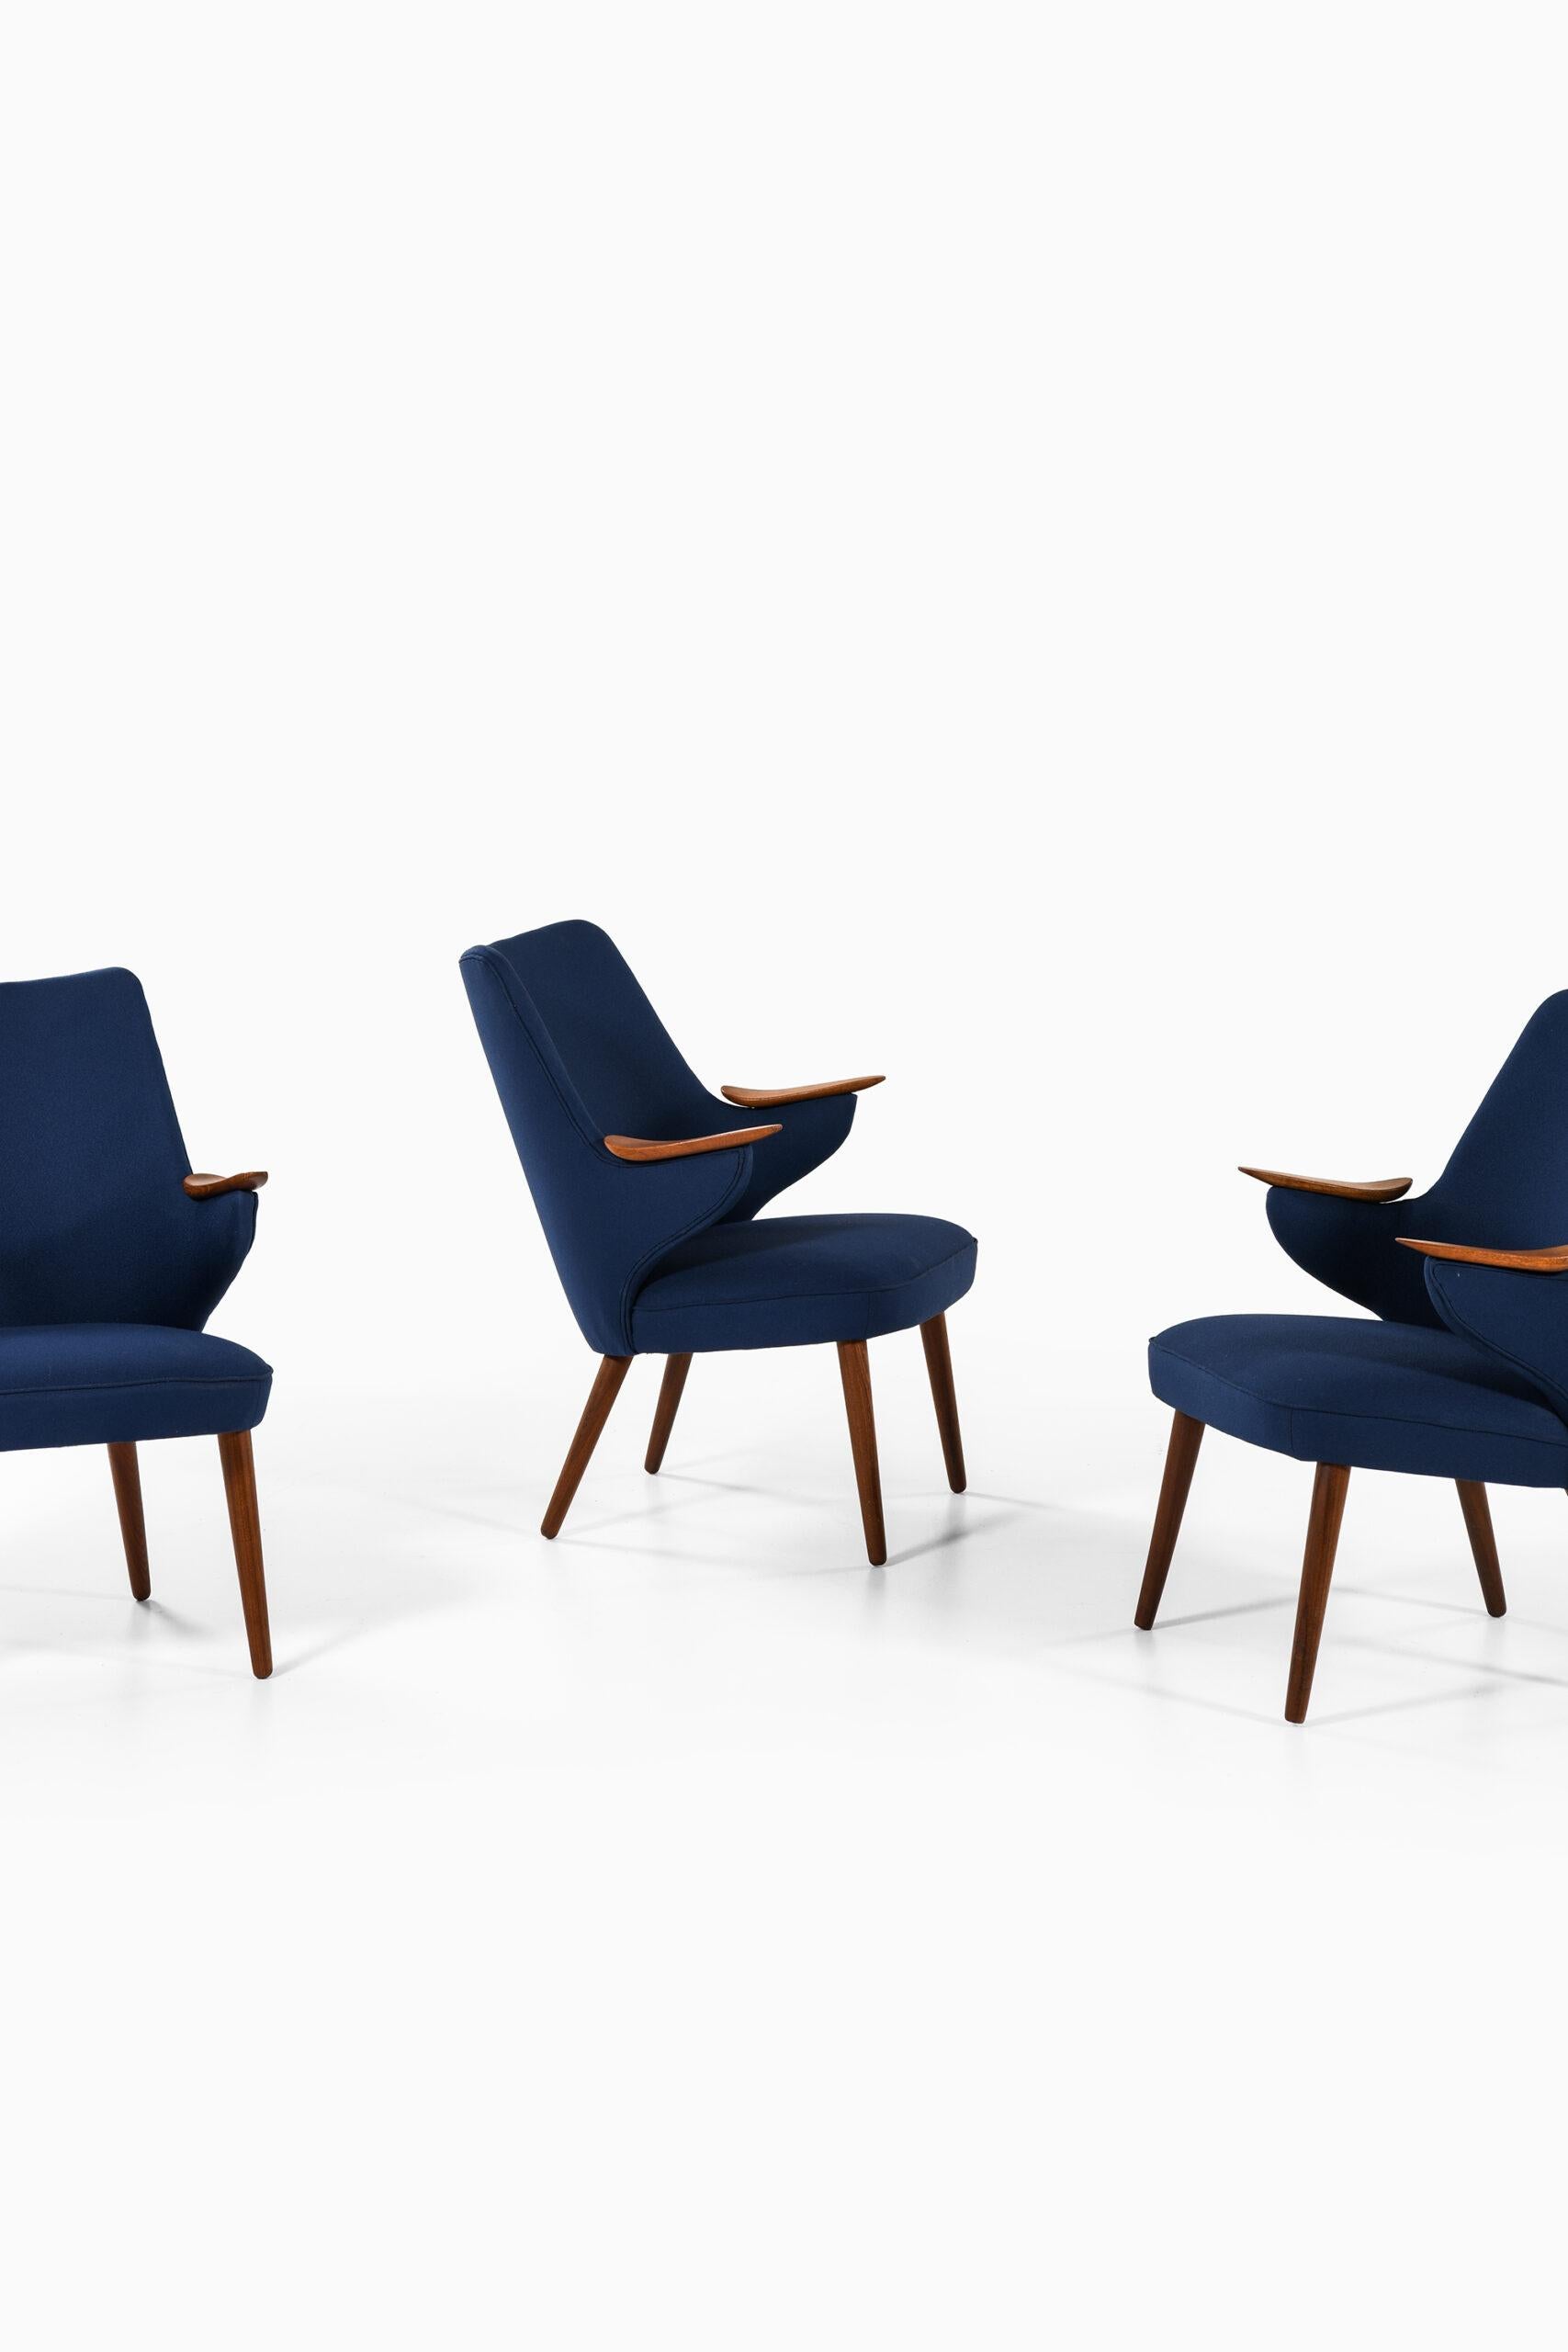 Seltene Sessel, entworfen von Erling Olsen. Produziert von Erling Olsen Møbler in Bramming, Dänemark.
Der Preis ist pro Stuhl angegeben.